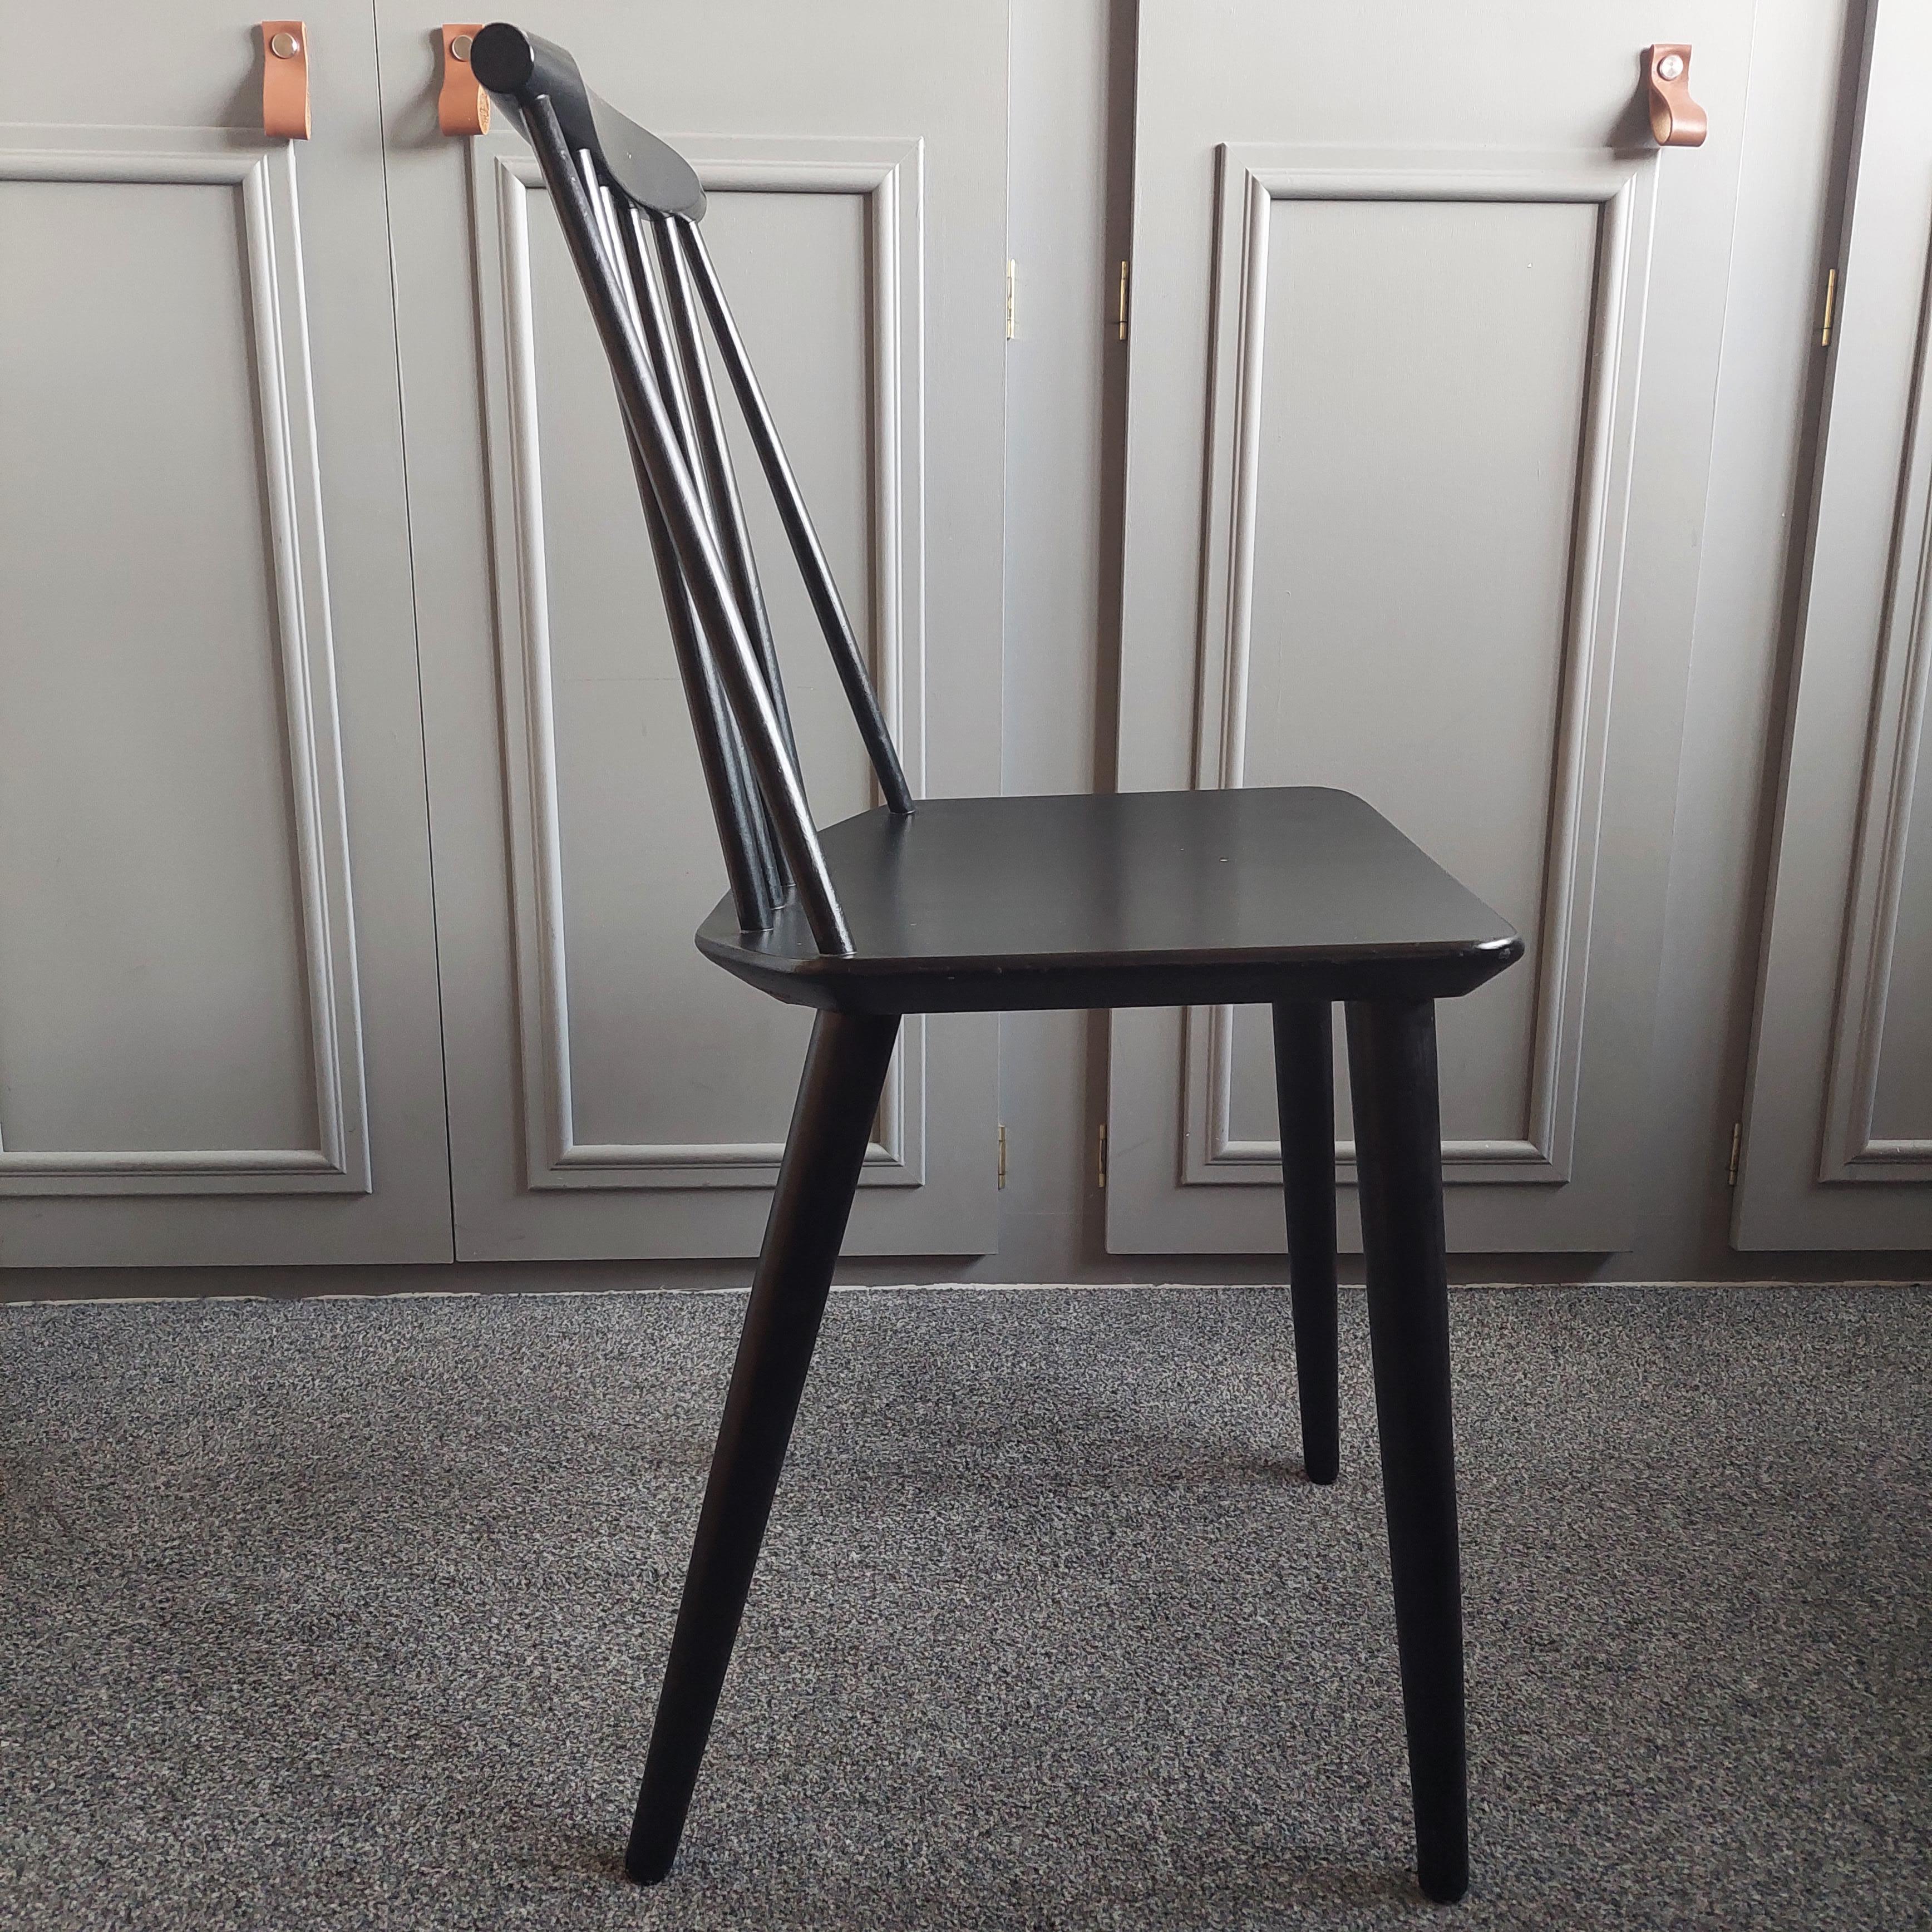 Beech Mid Century J77 Chair Folke Palsson for Fdb Mobler Danish Modernist 70s